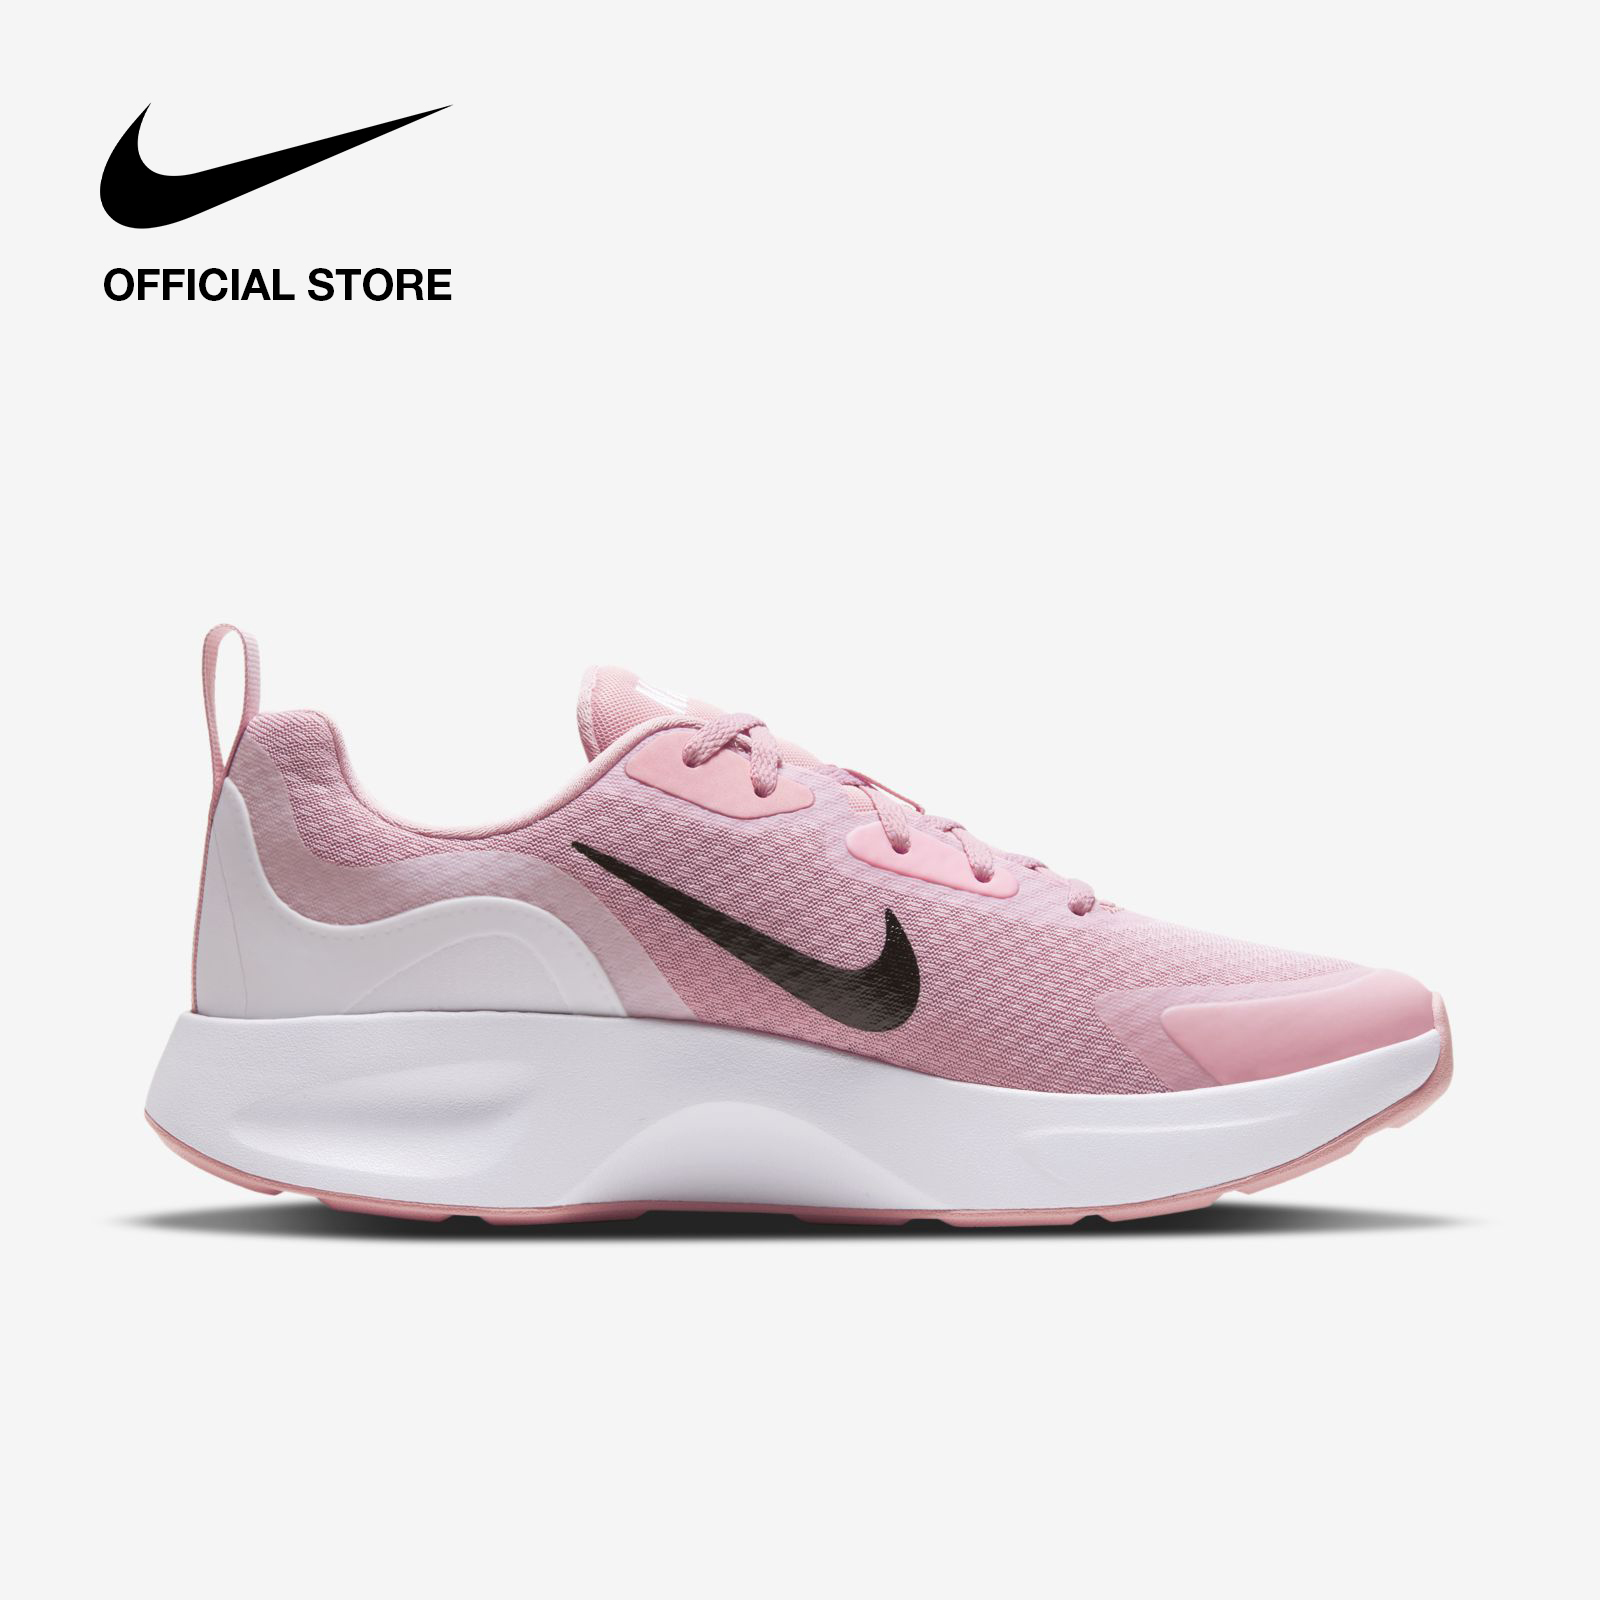 Nike Women's Wearallday Shoes - Pink ไนกี้ รองเท้าผู้หญิง แวร์ออลเดย์ - สีชมพู